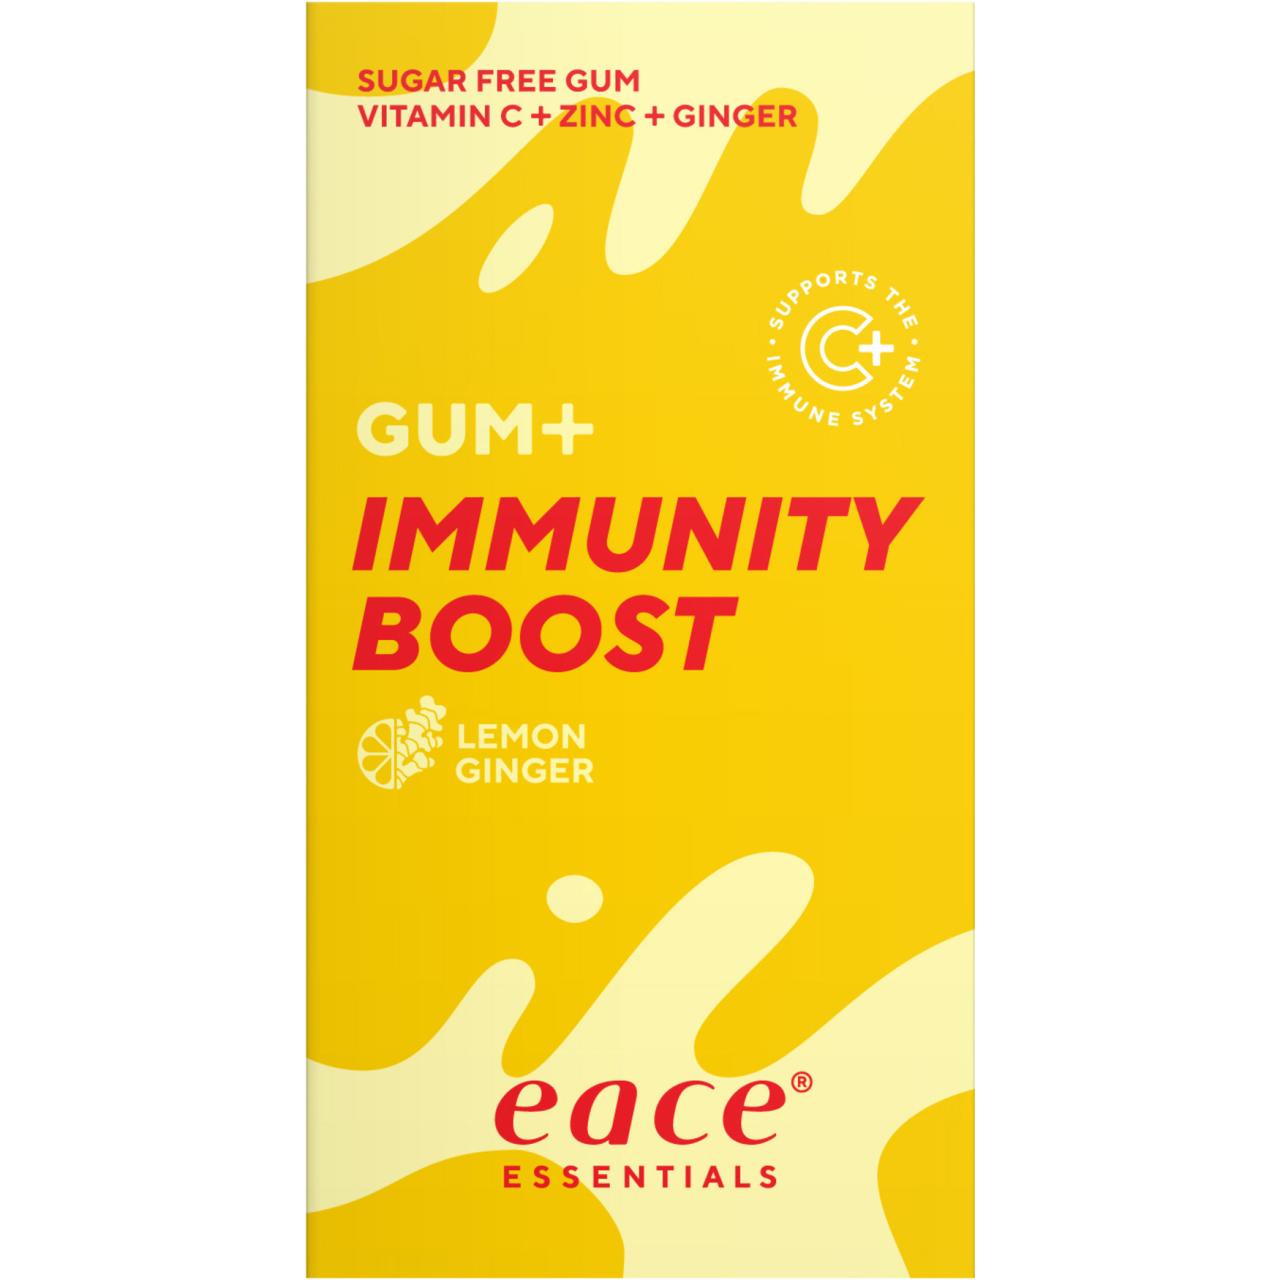 eace Gum+ Immunity Boost Lemon Ginger 20g